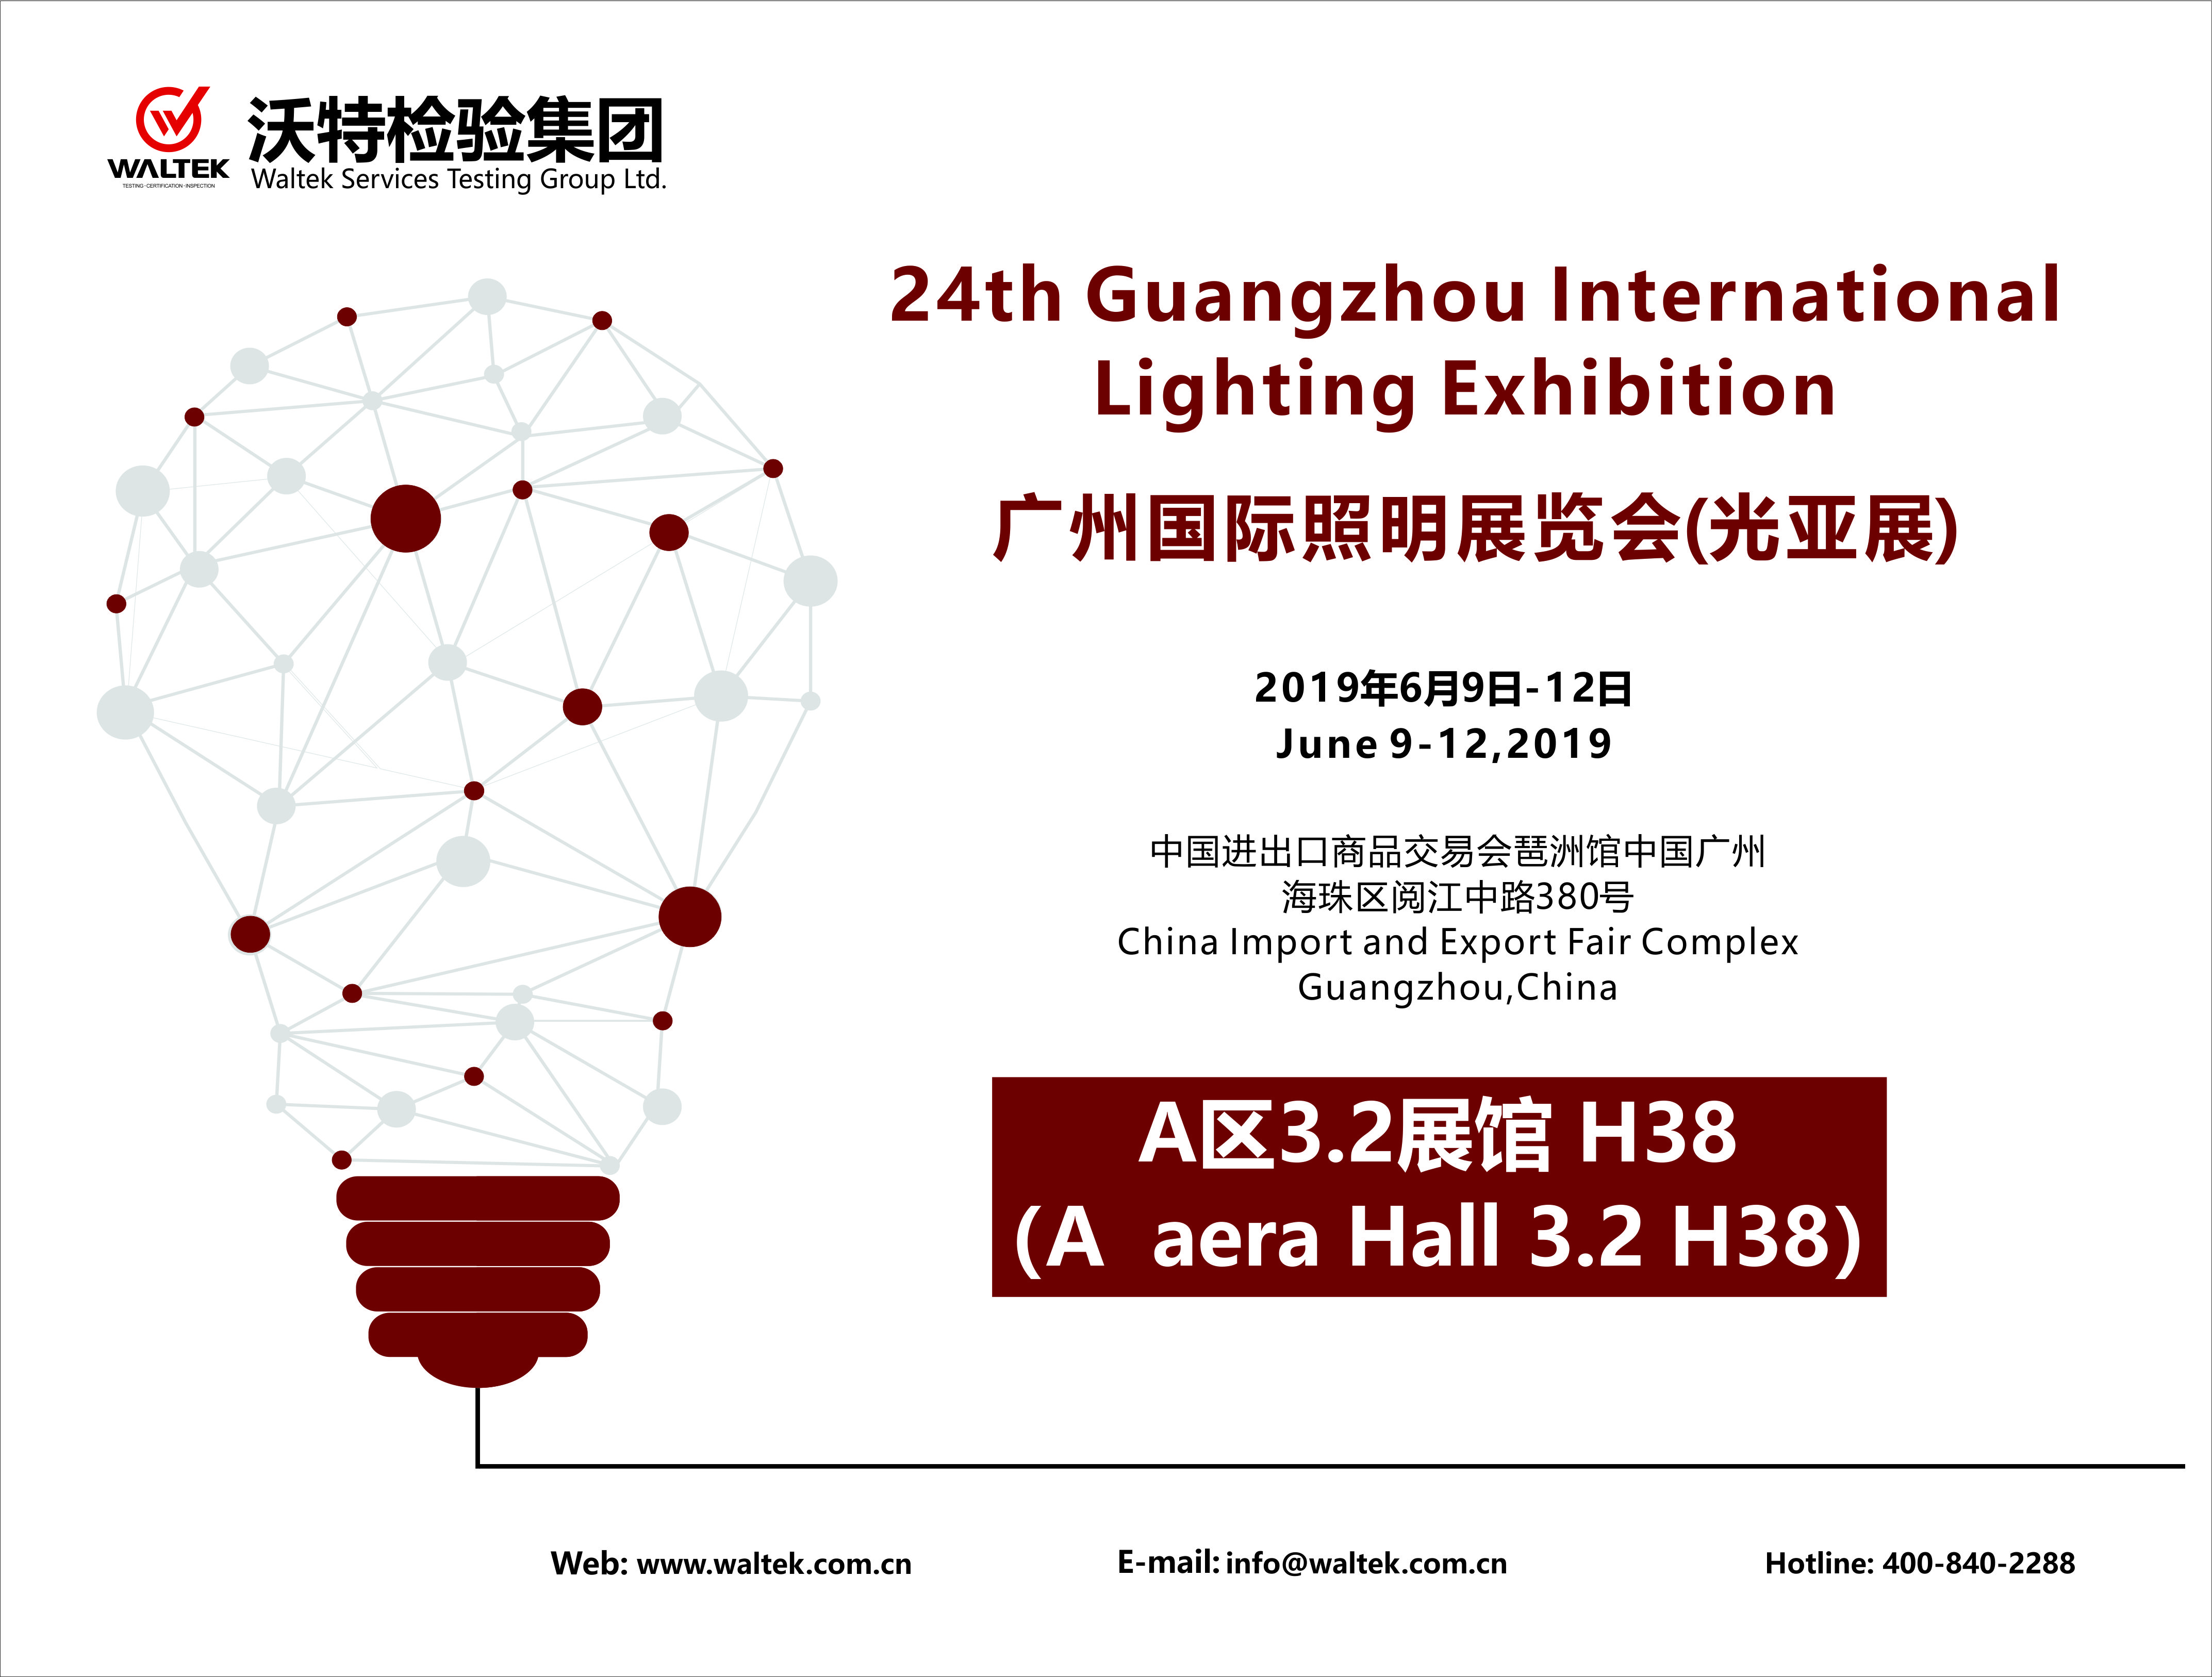 2019年第24届广州国际照明展览会（光亚展）